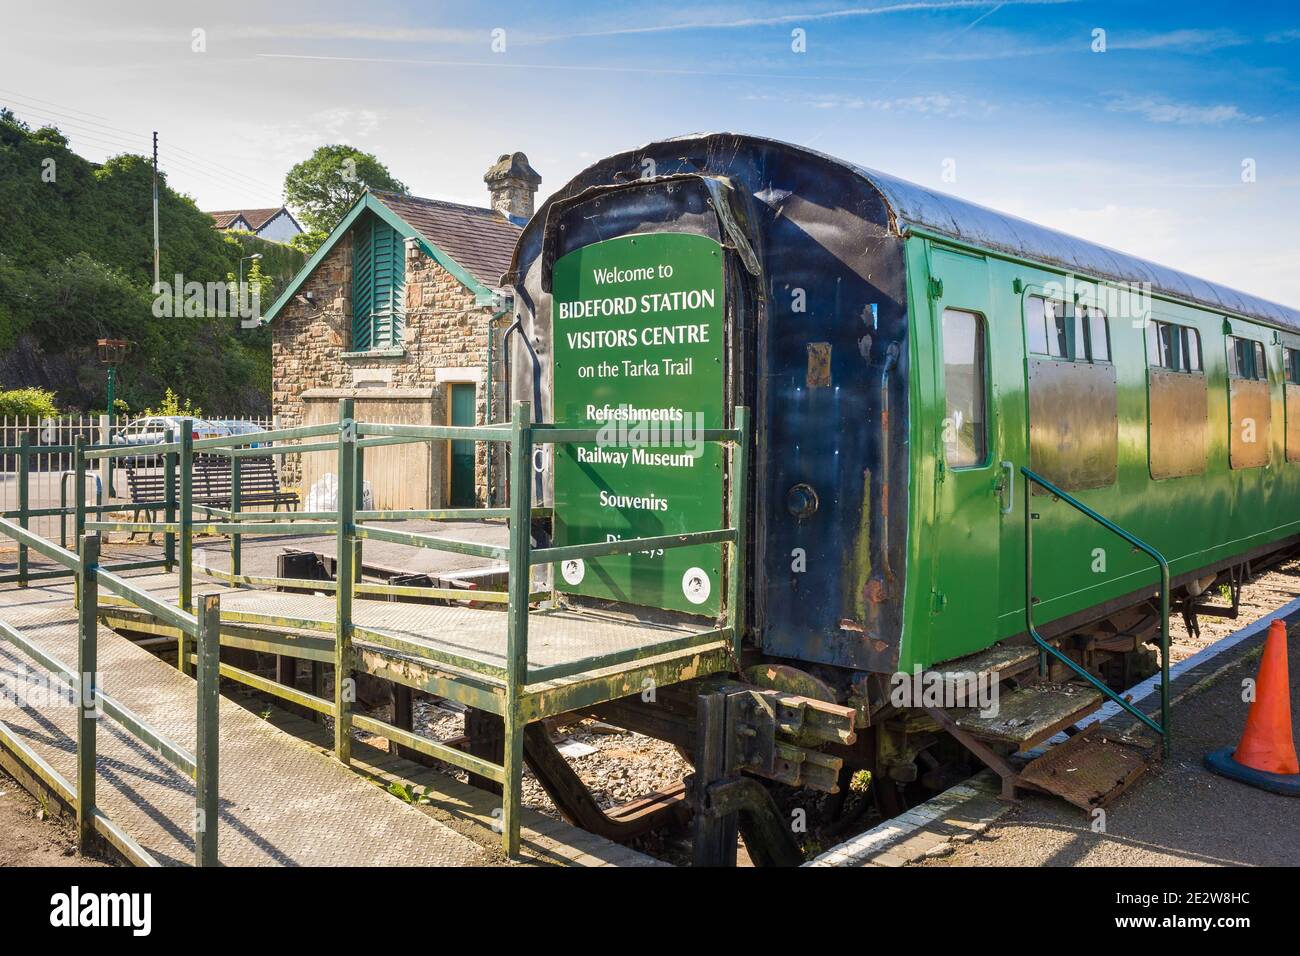 L'ancienne gare ferroviaire de Bideford North Devon England UK la photo montre un ancien chemin de fer utilisé comme centre d'information et musée. Banque D'Images